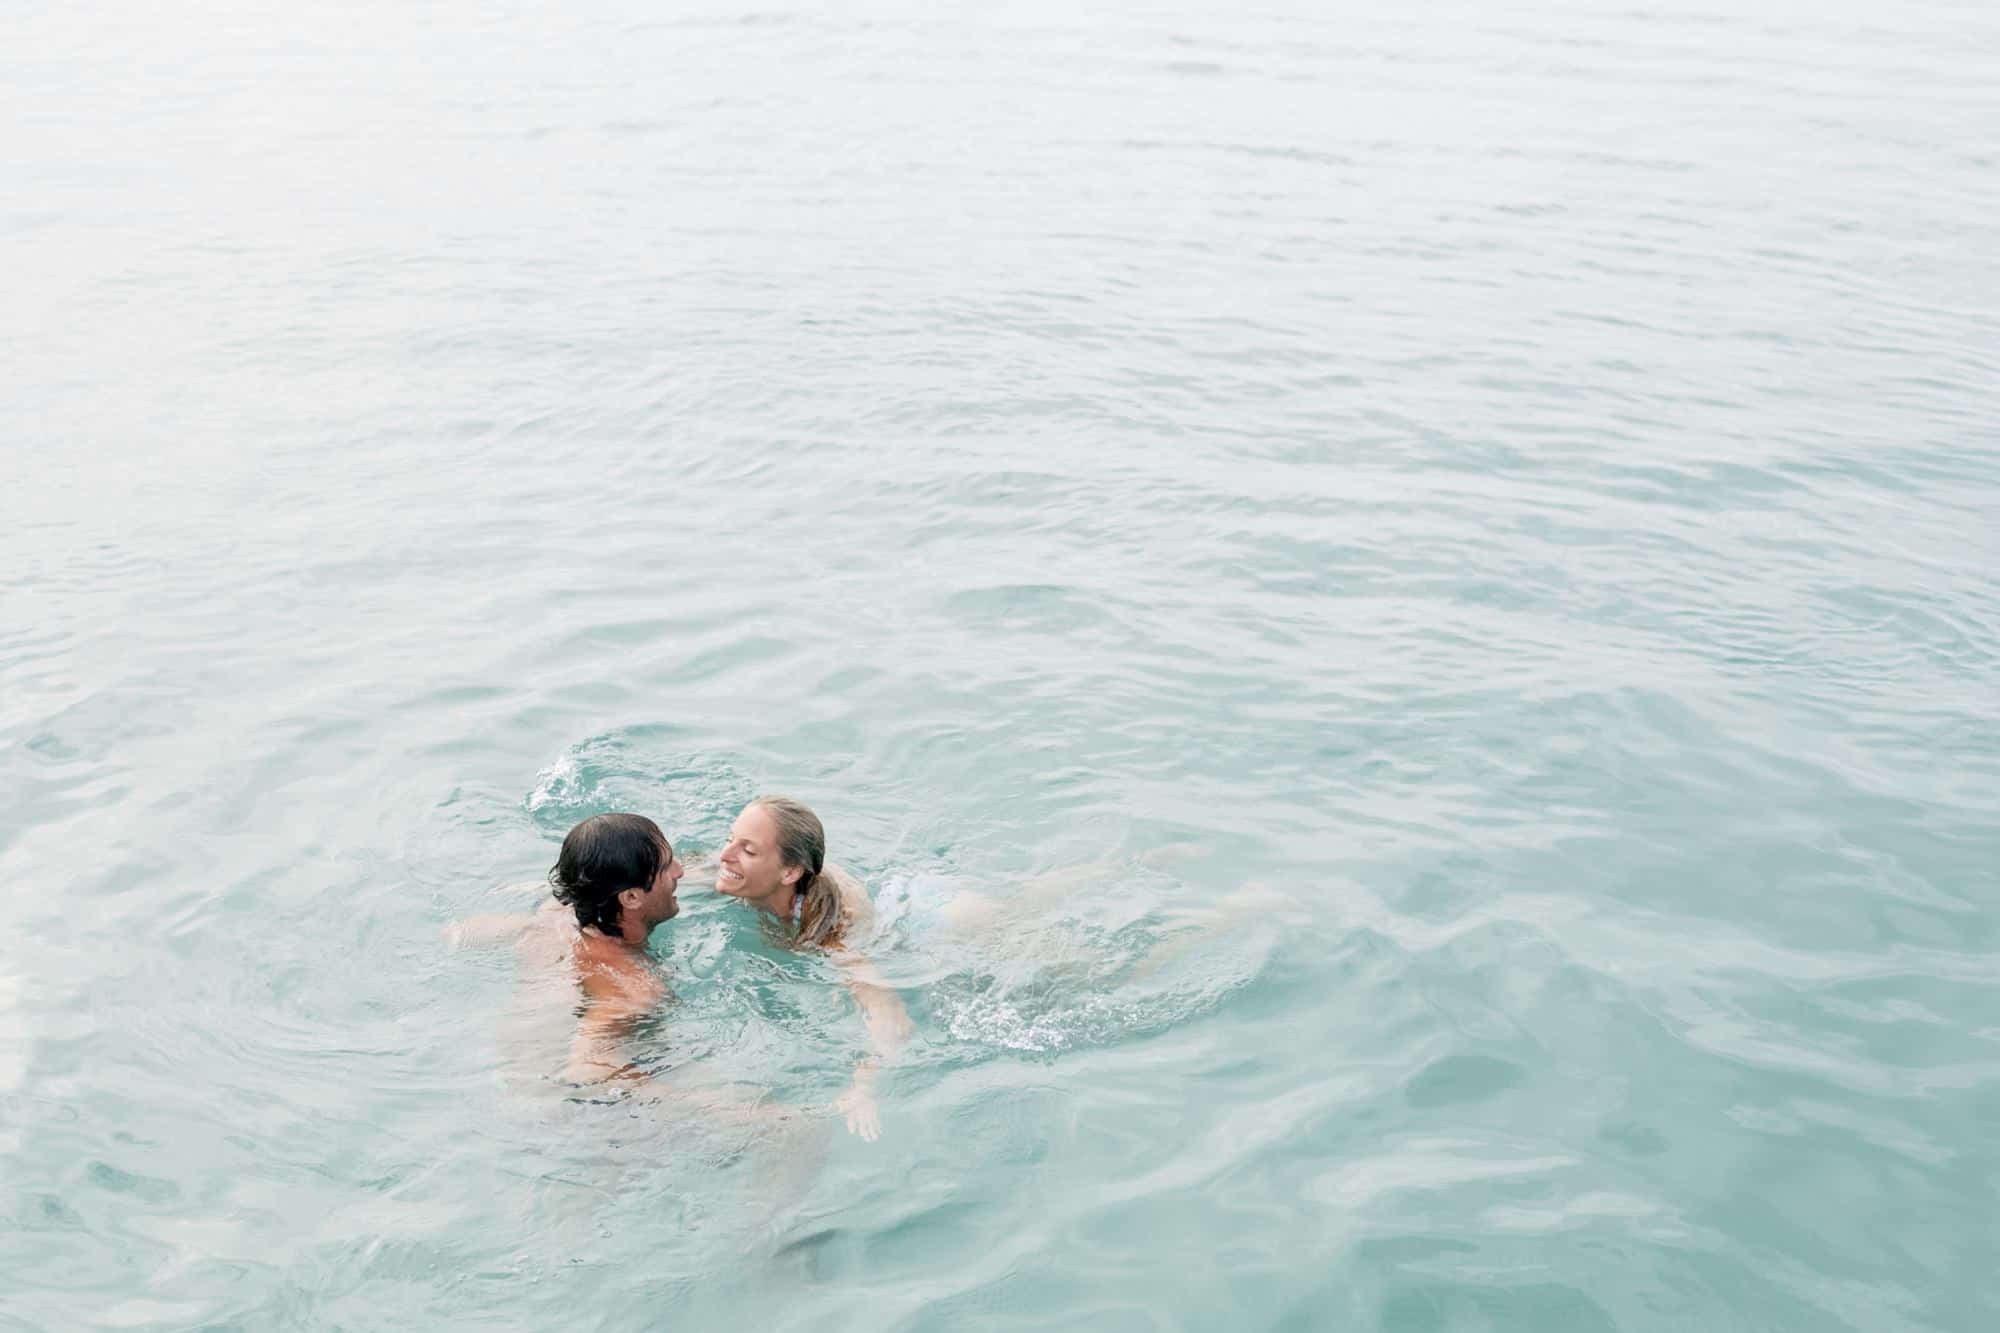 Coral beach club wedding Bermuda - Bride and groom jumped in the ocean